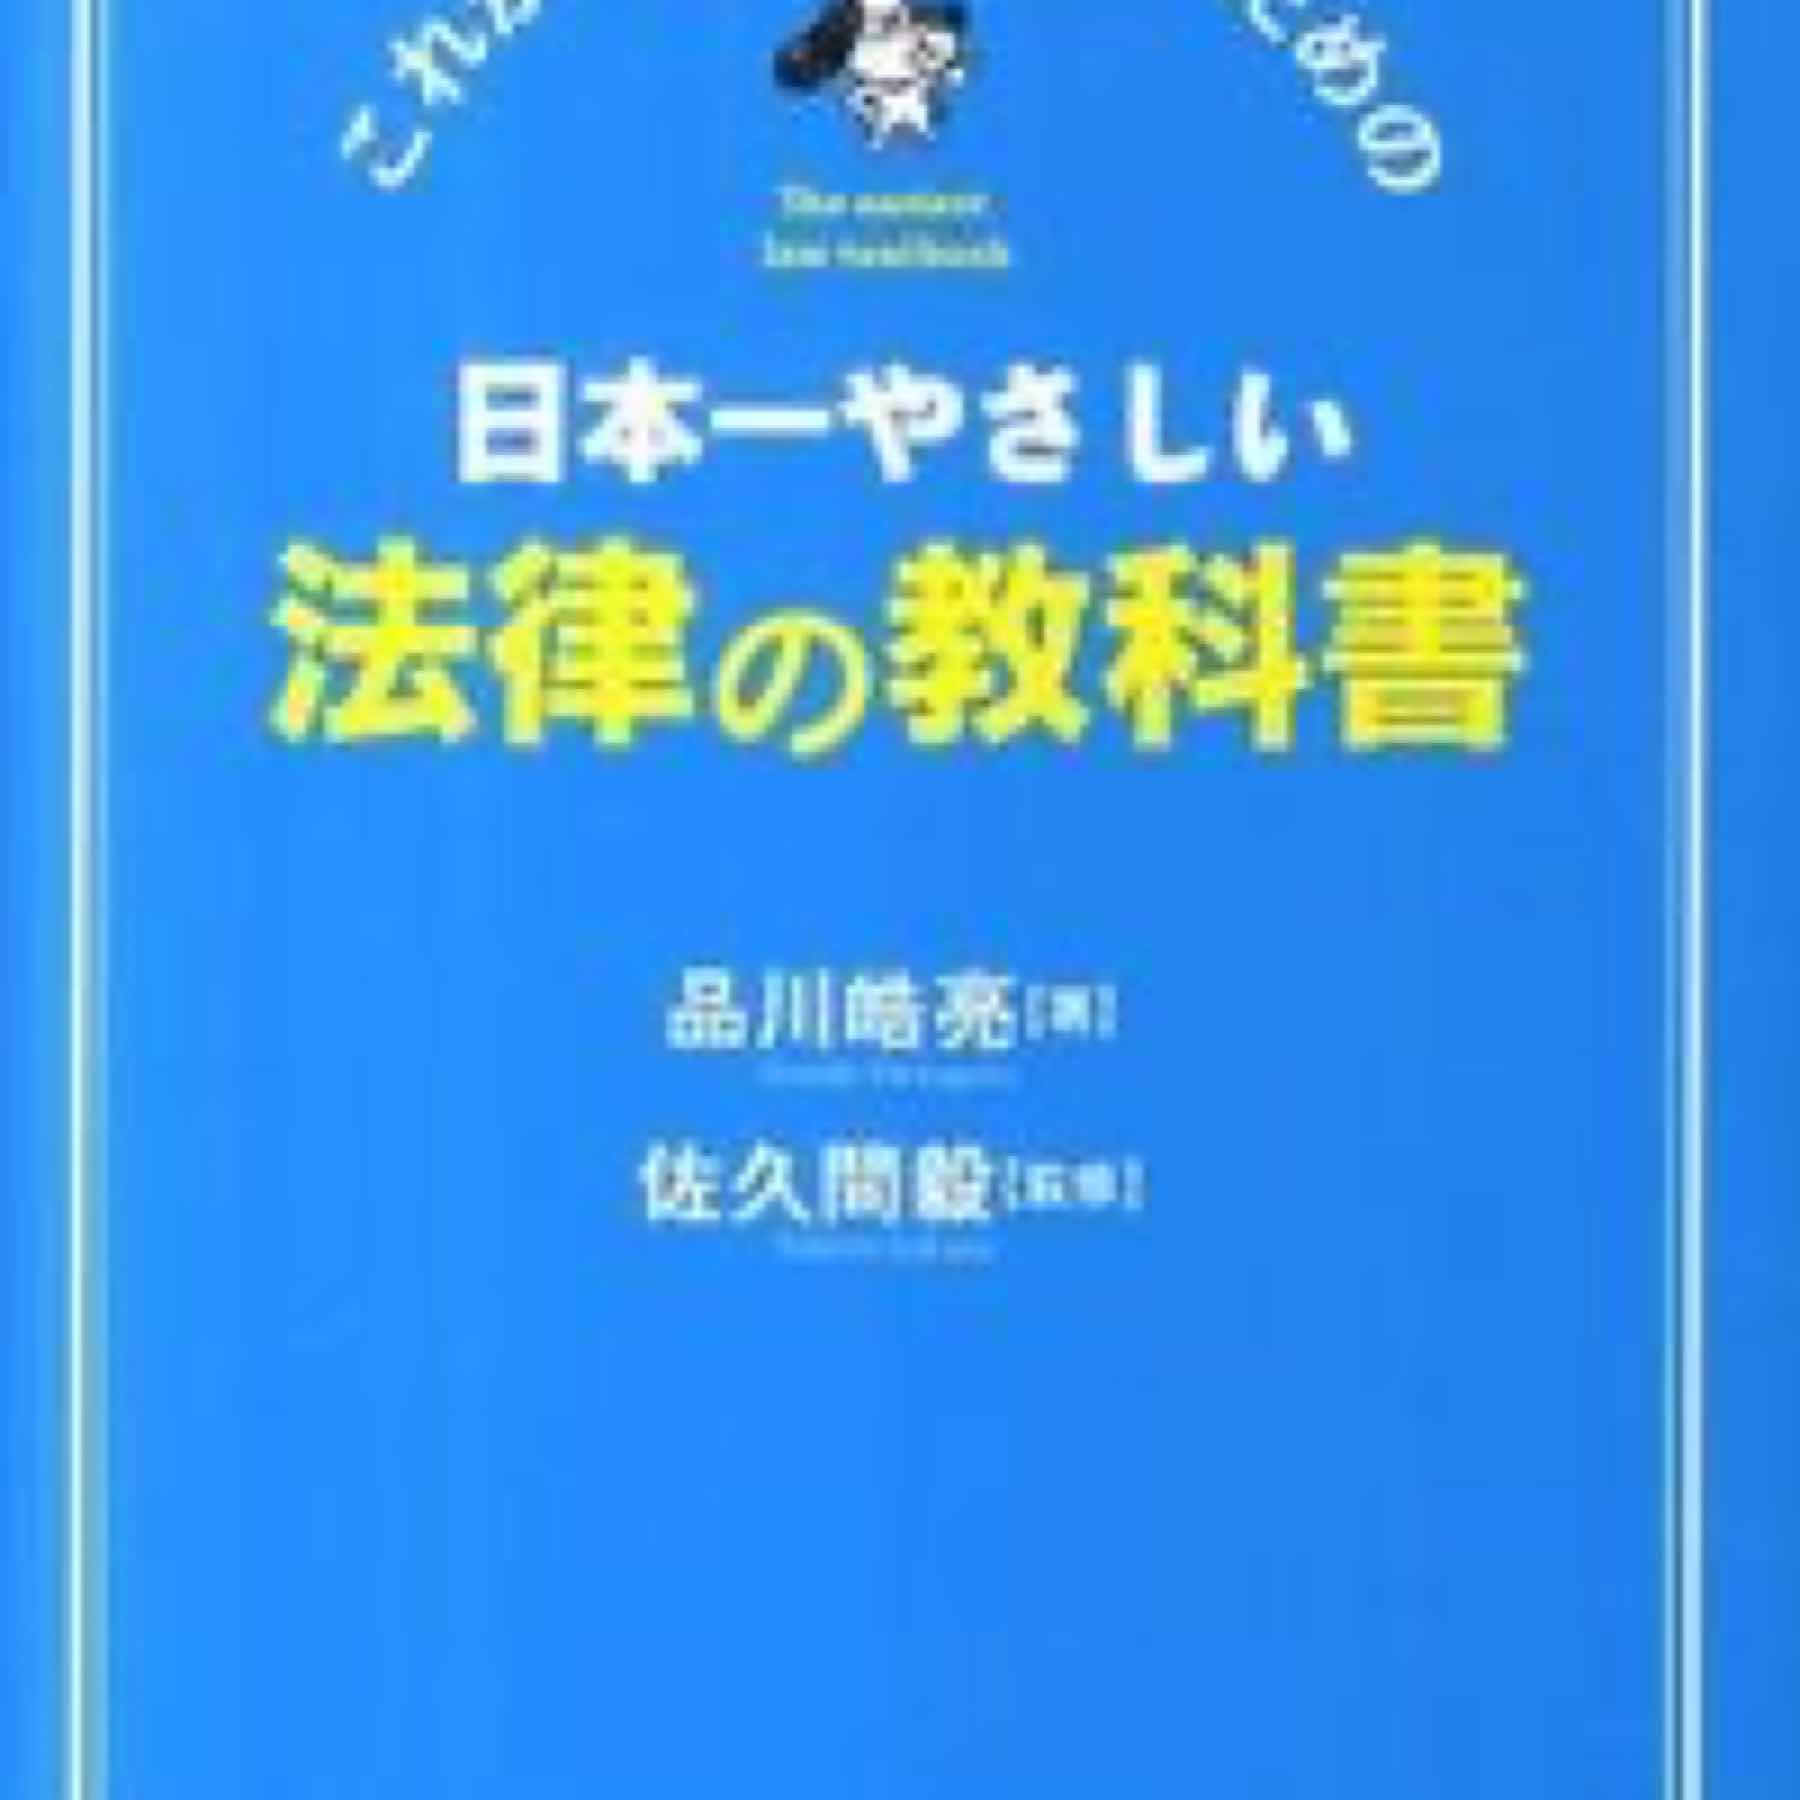 日本一やさしい法律の教科書 : これから勉強する人のための